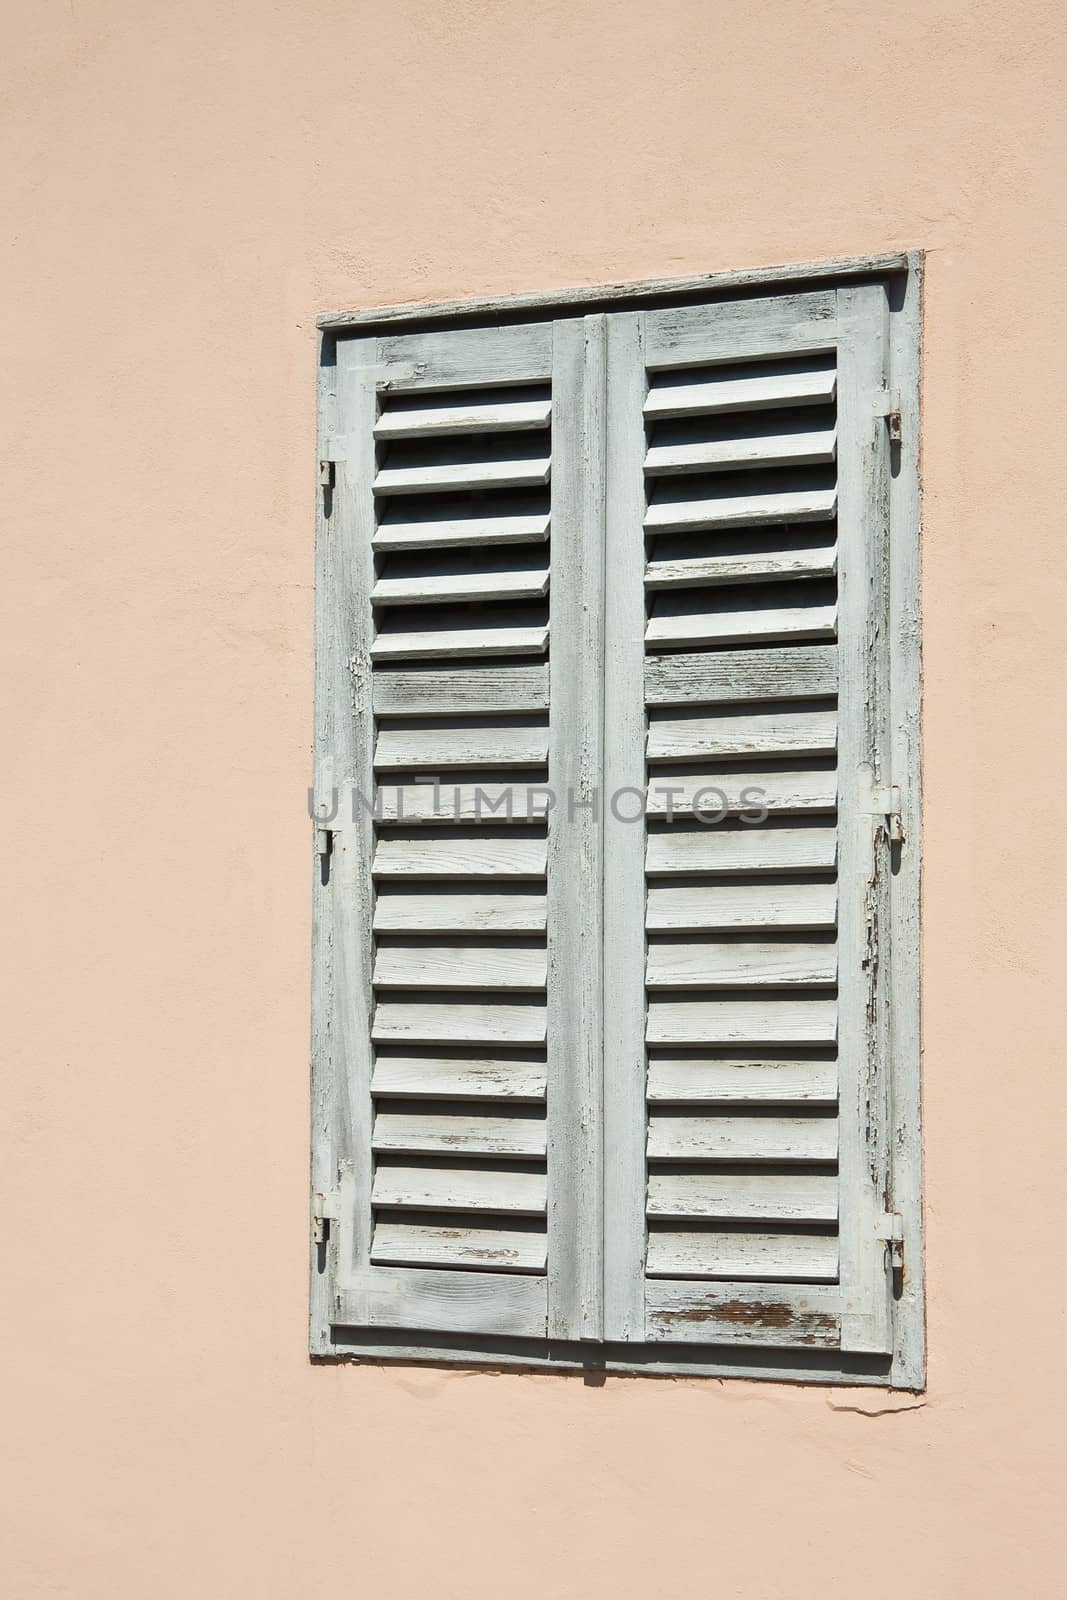 A window with shutters by nikolpetr